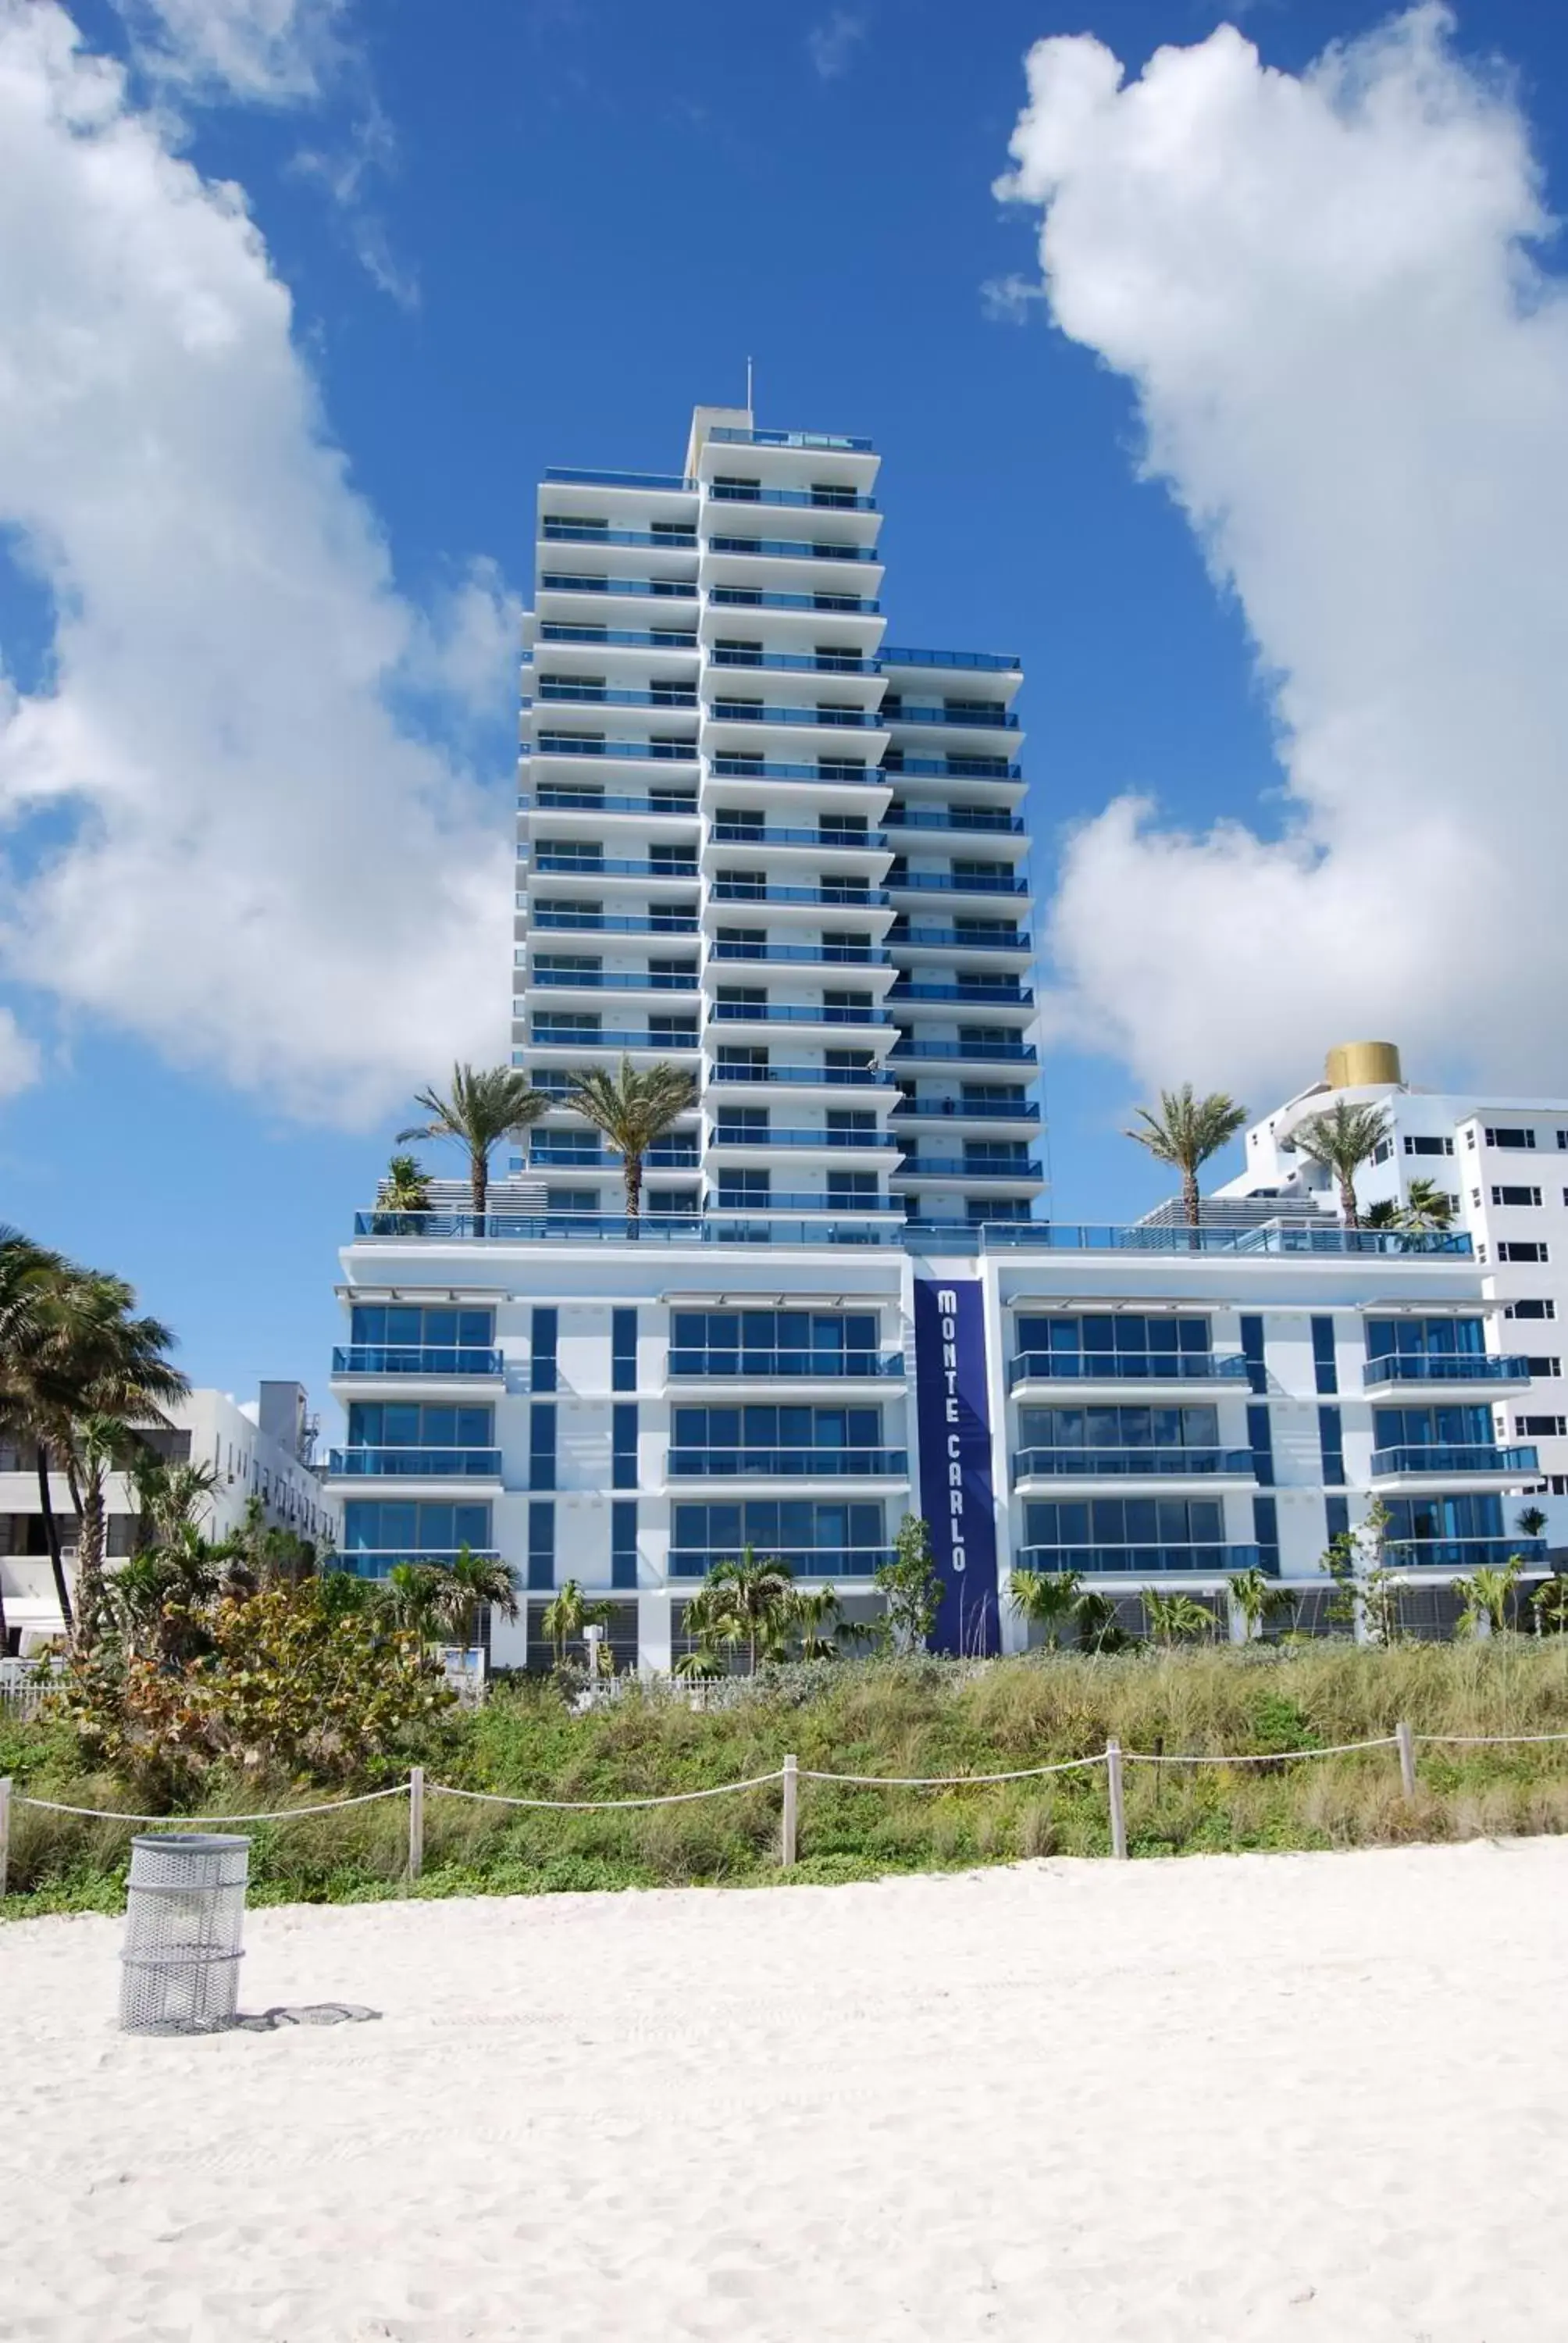 Facade/entrance, Property Building in Monte Carlo by Miami Vacations